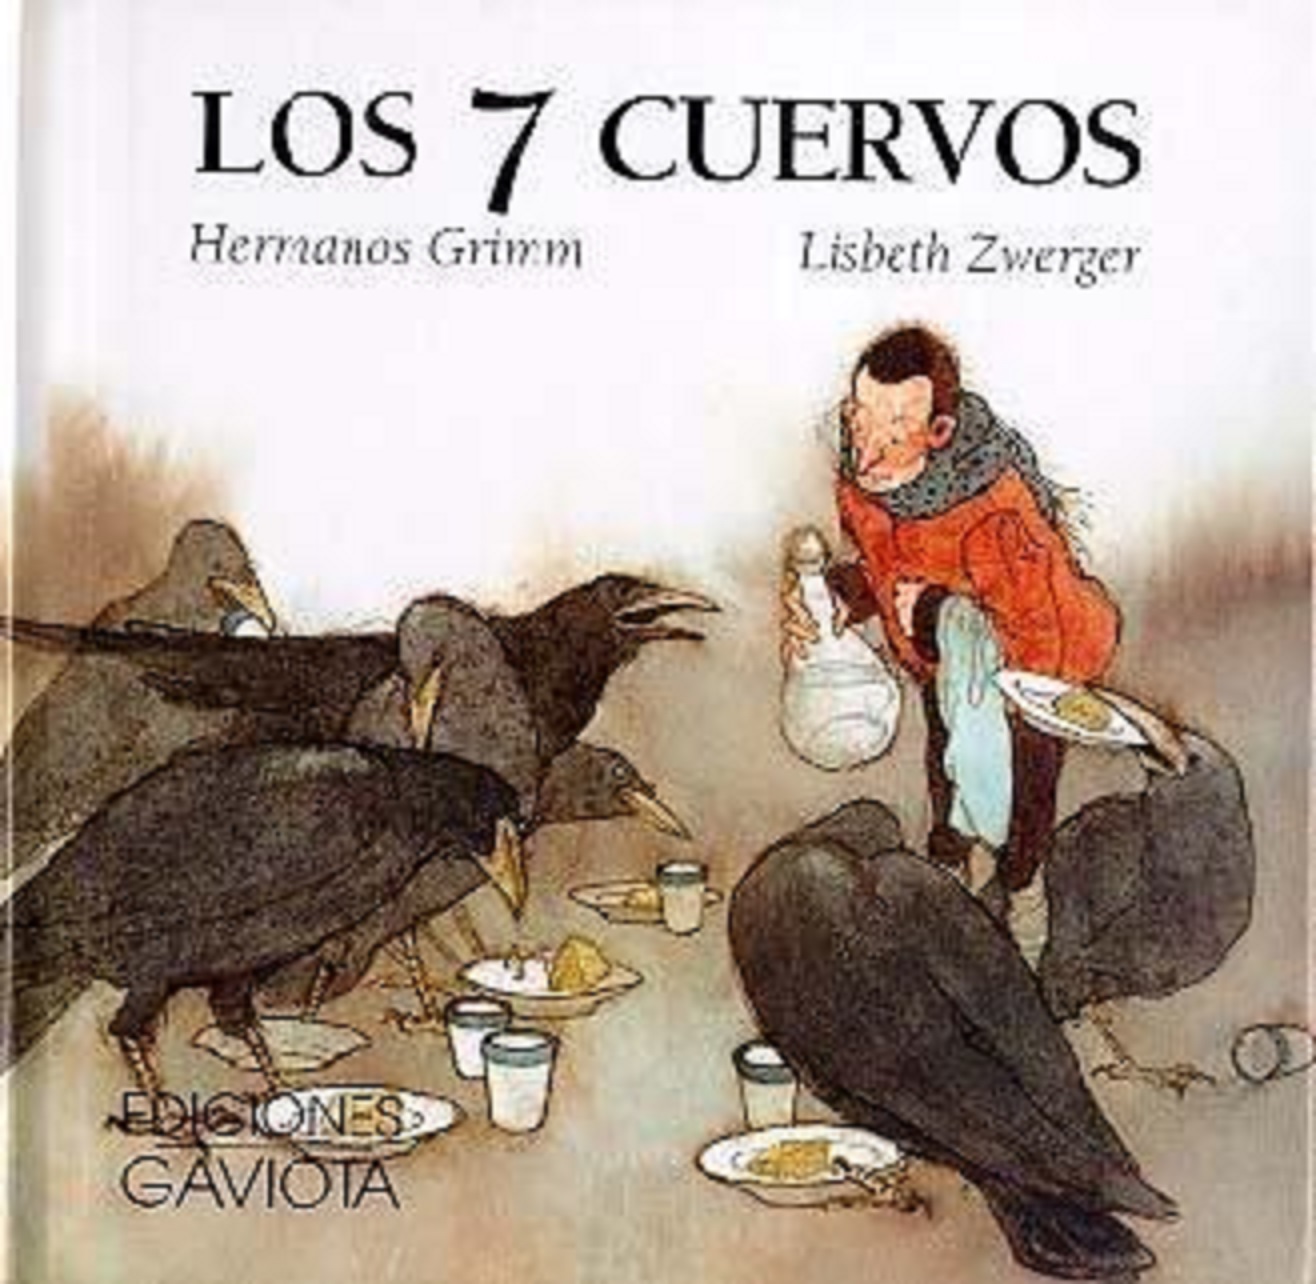 SEIS DE CUERVOS  Libreria Carlos Fuentes